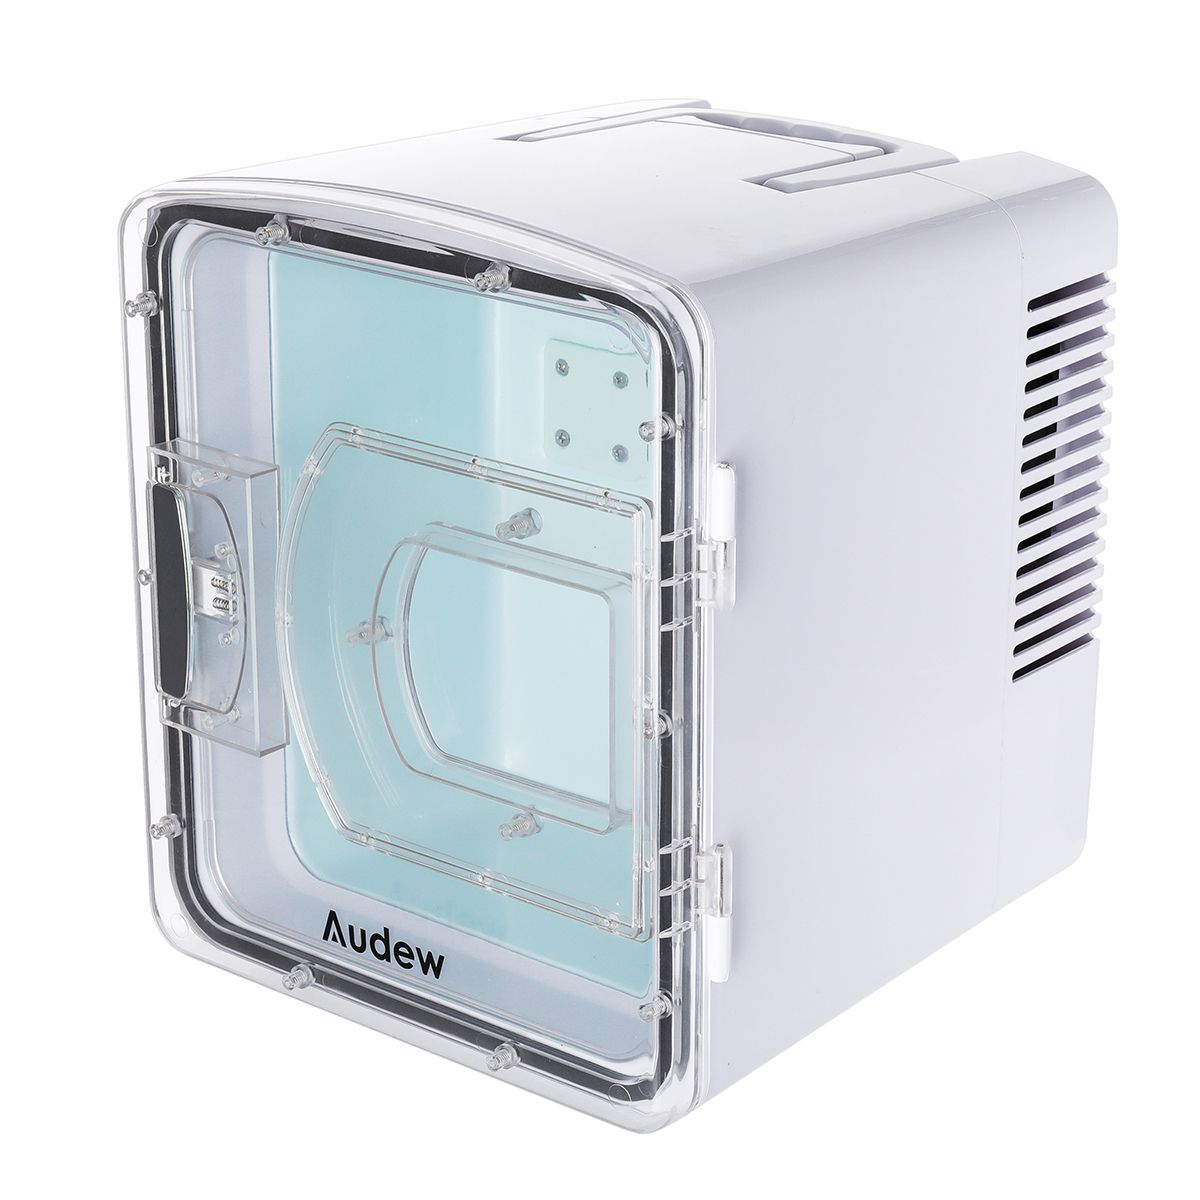 Portable-Compact-Personal-Fridge-Cools-Heats-Car-Refrigerator-1370504